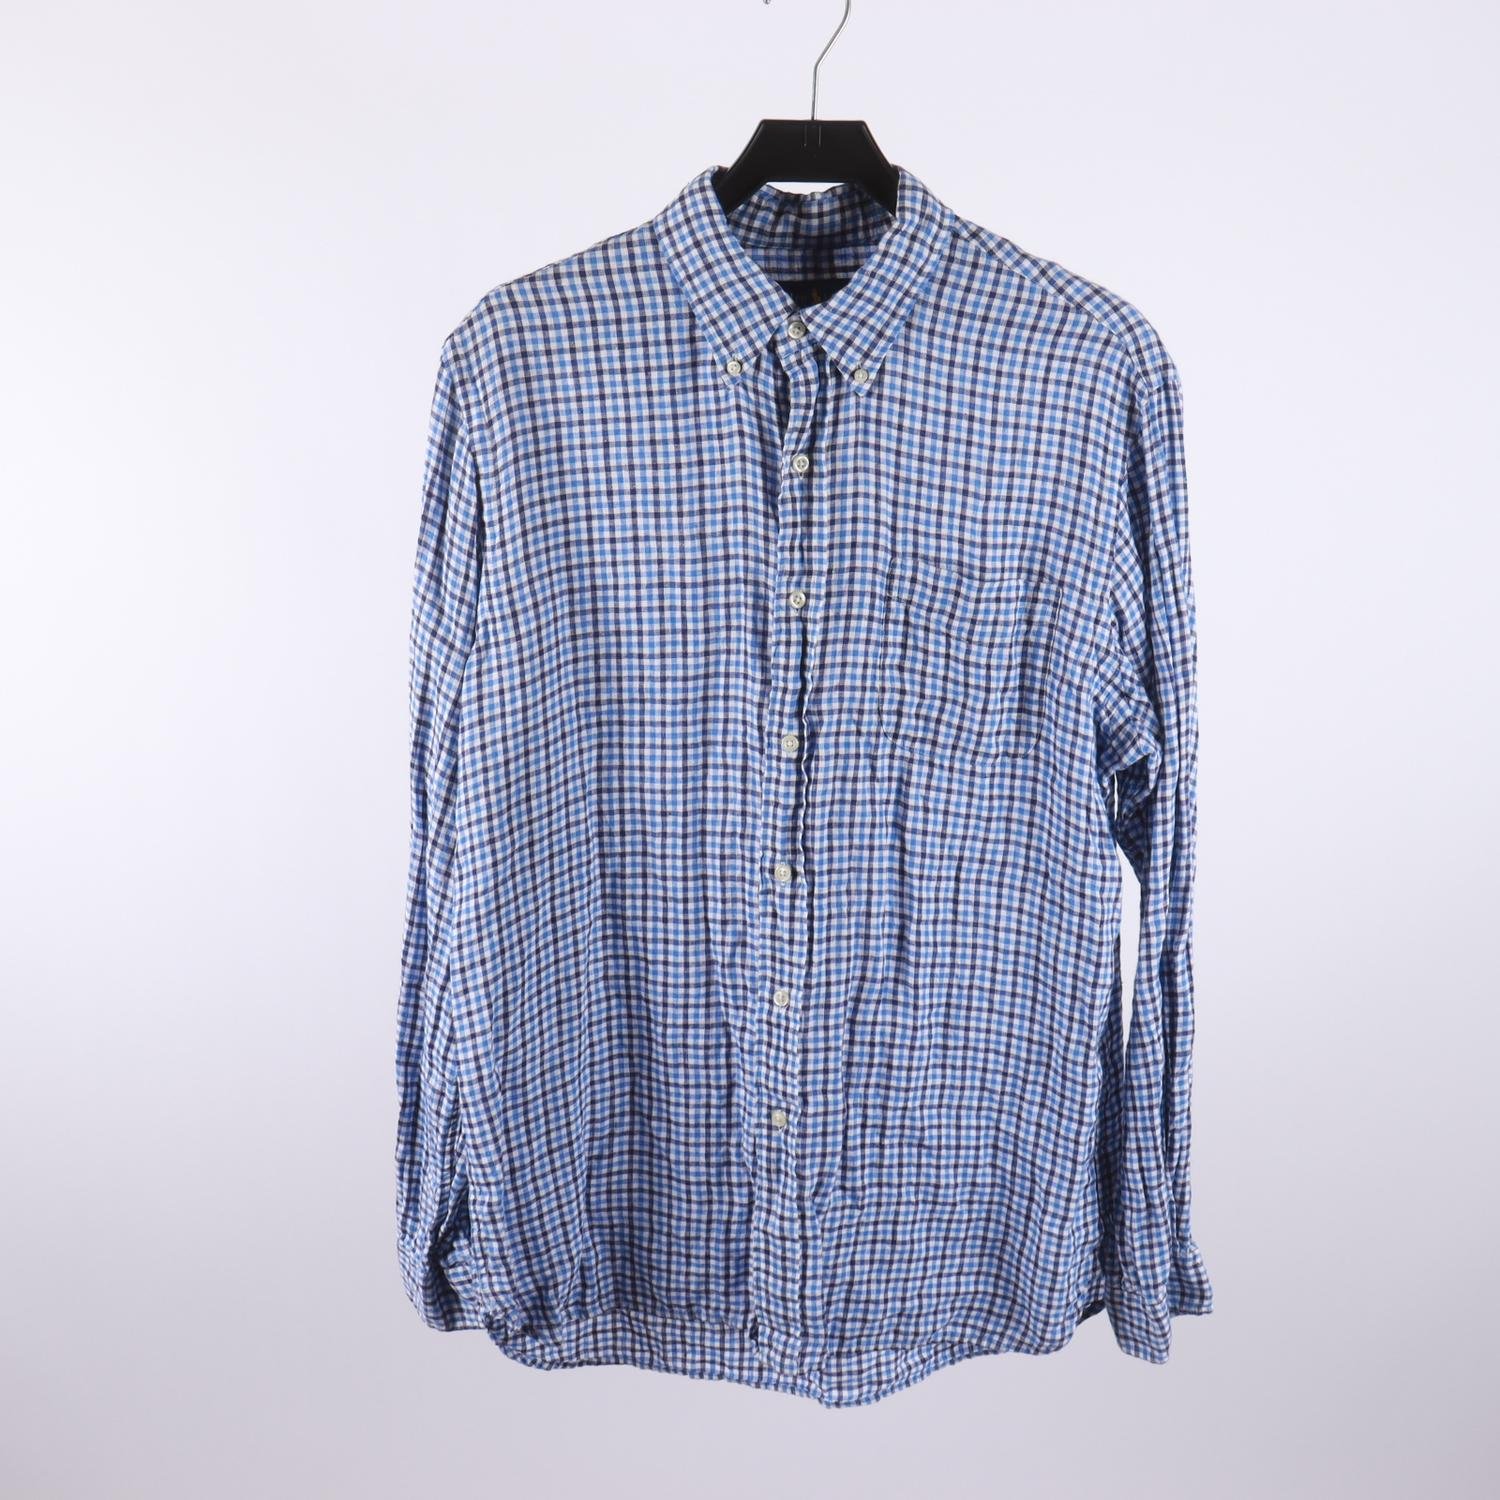 Linneskjorta, Ralph Lauren, blå, rutig, stl. L